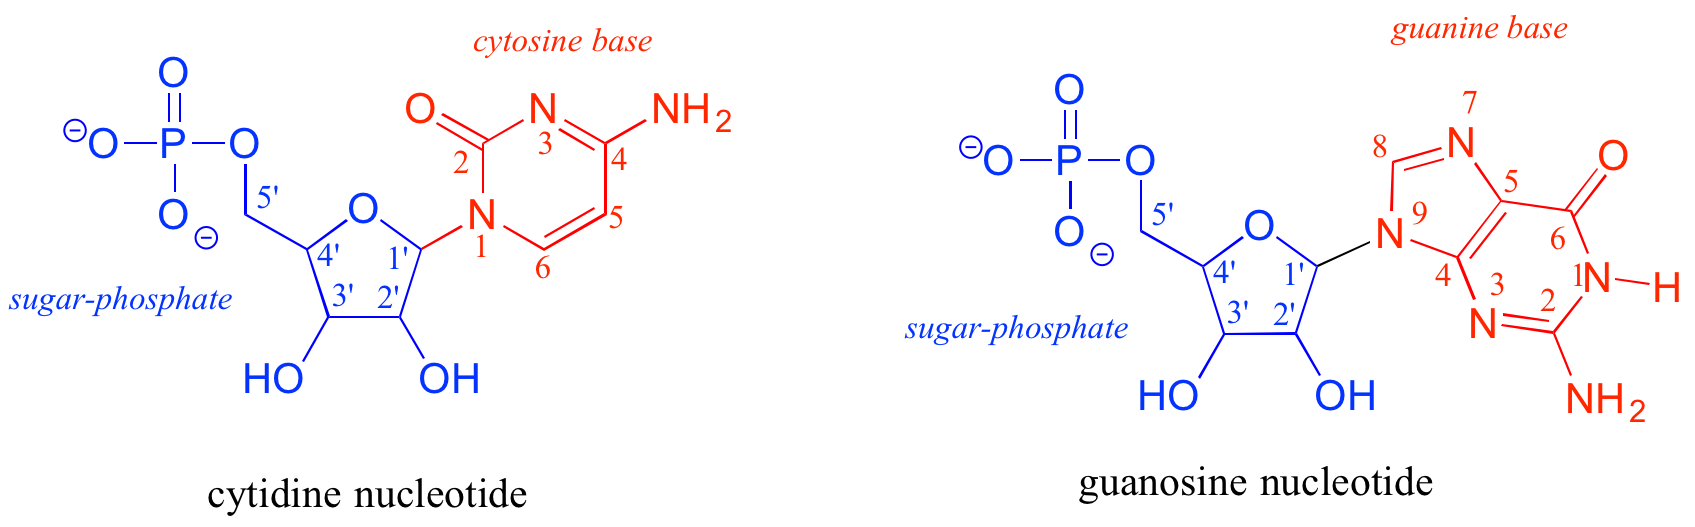 Izquierda: nucleótido citidina; base de citosina en rojo y azúcar-fosfato en azul. Derecha: Nucleótido de guanosina; base guanina en rojo y azúcar-fosfato en azul.